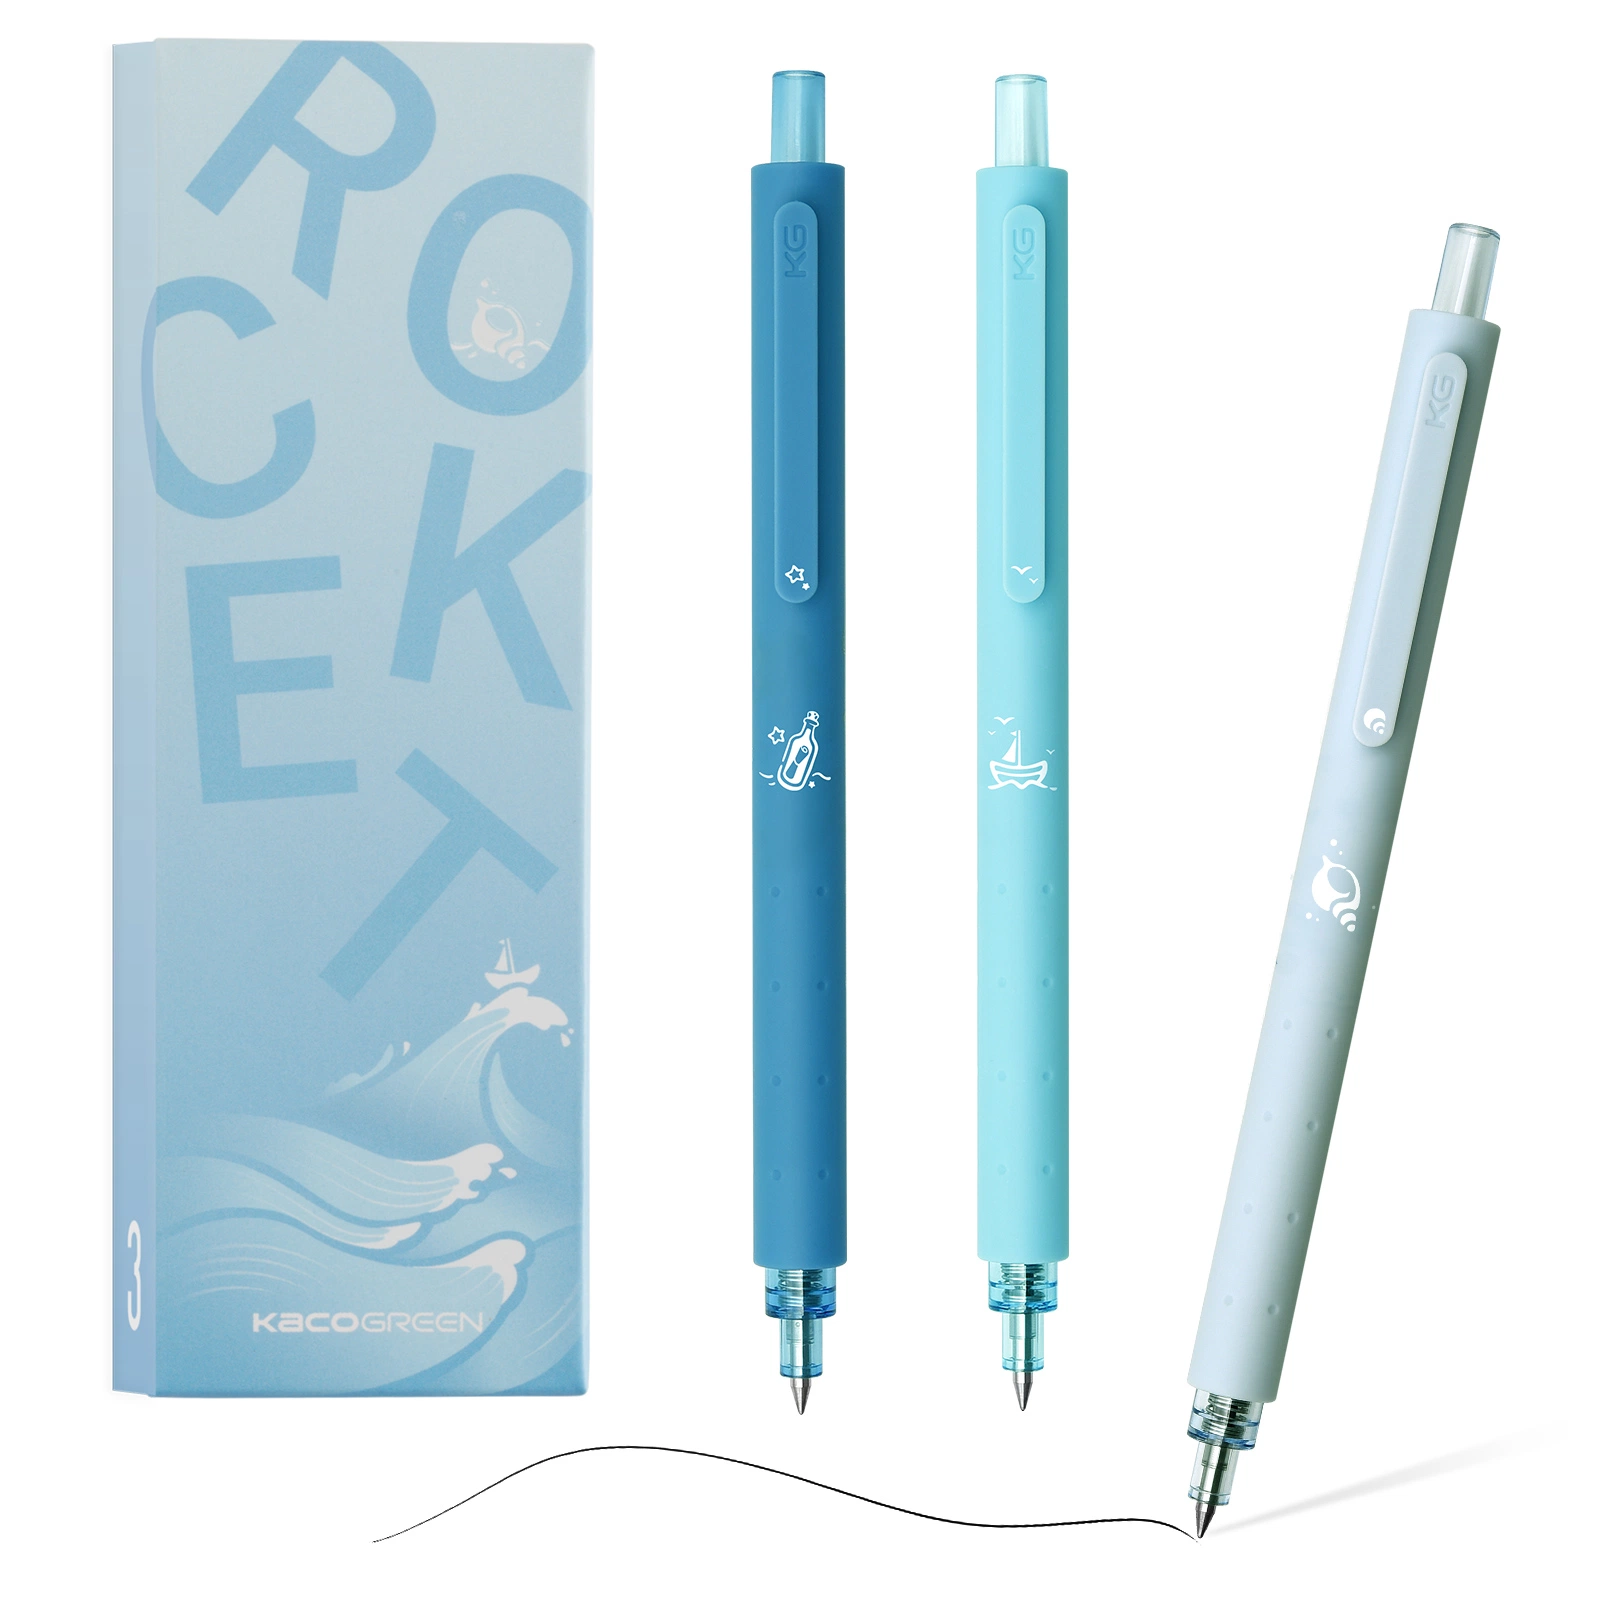 Kaco Rocket encre gel stylos plume en caoutchouc souple mignon 0.5mm fine pointe des jeux de plumes des briquets rechargeables des plumes personnalisées disponibles à l'école les fournitures de bureau